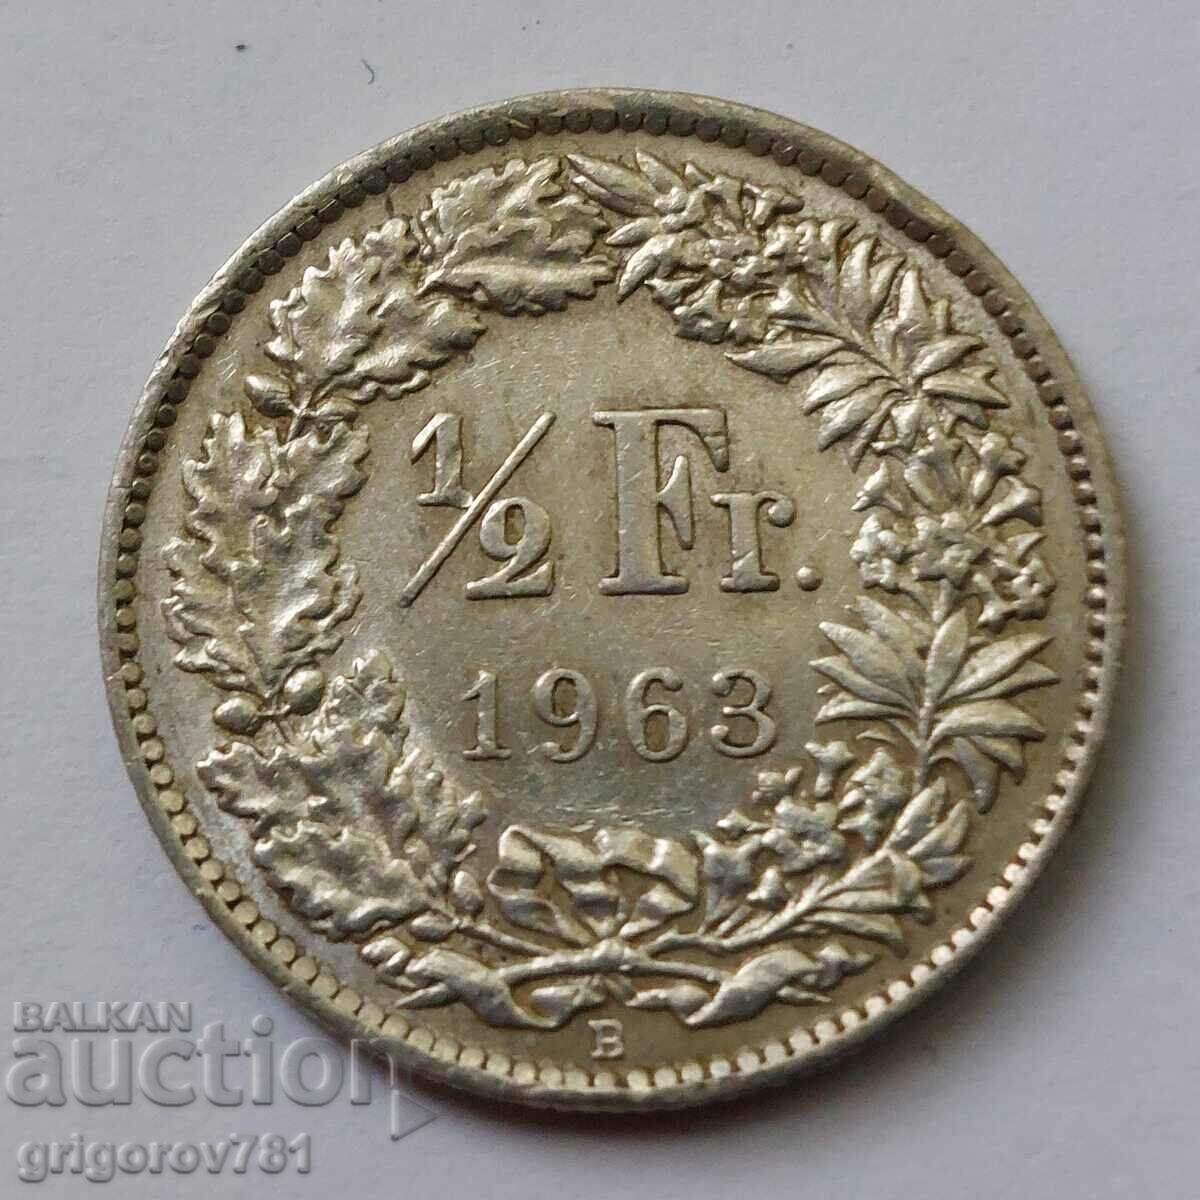 Ασημένιο φράγκο 1/2 Ελβετία 1963 Β - Ασημένιο νόμισμα #16